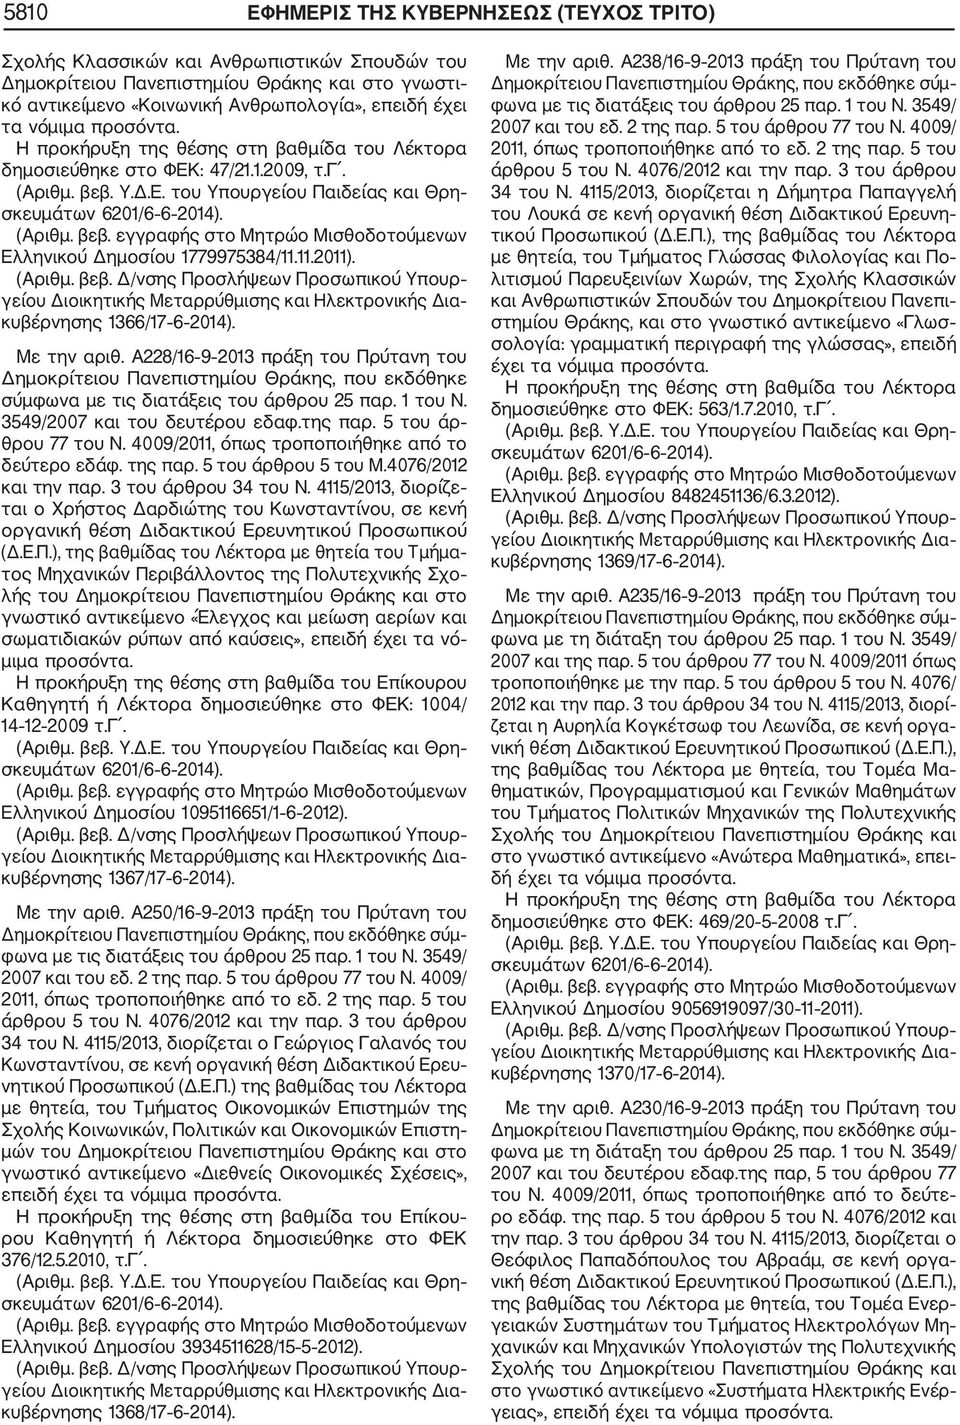 Α228/16 9 2013 πράξη του Πρύτανη του Δημοκρίτειου Πανεπιστημίου Θράκης, που εκδόθηκε σύμφωνα με τις διατάξεις του άρθρου 25 παρ. 1 του Ν. 3549/2007 και του δευτέρου εδαφ.της παρ.